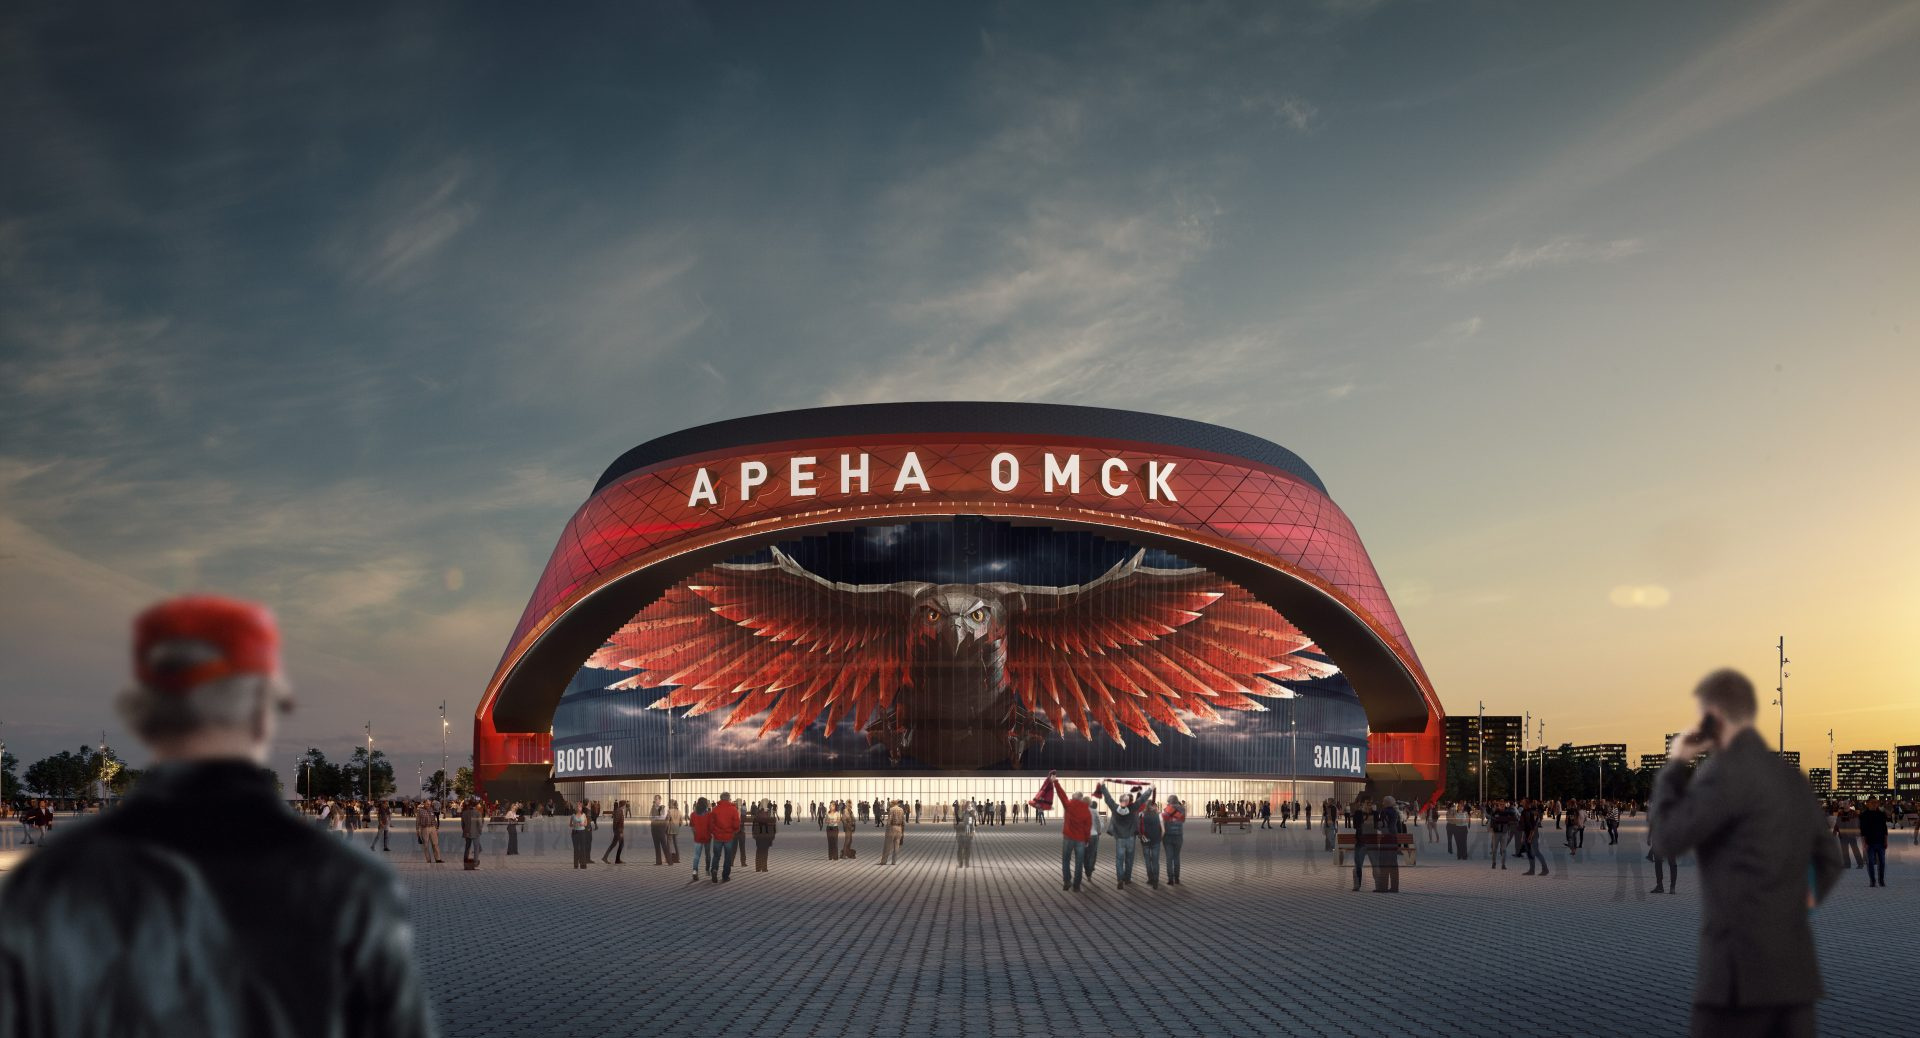 На эскизе будущая арена выглядит именно так: фасад с подсветкой и знаменитое изображение ястреба